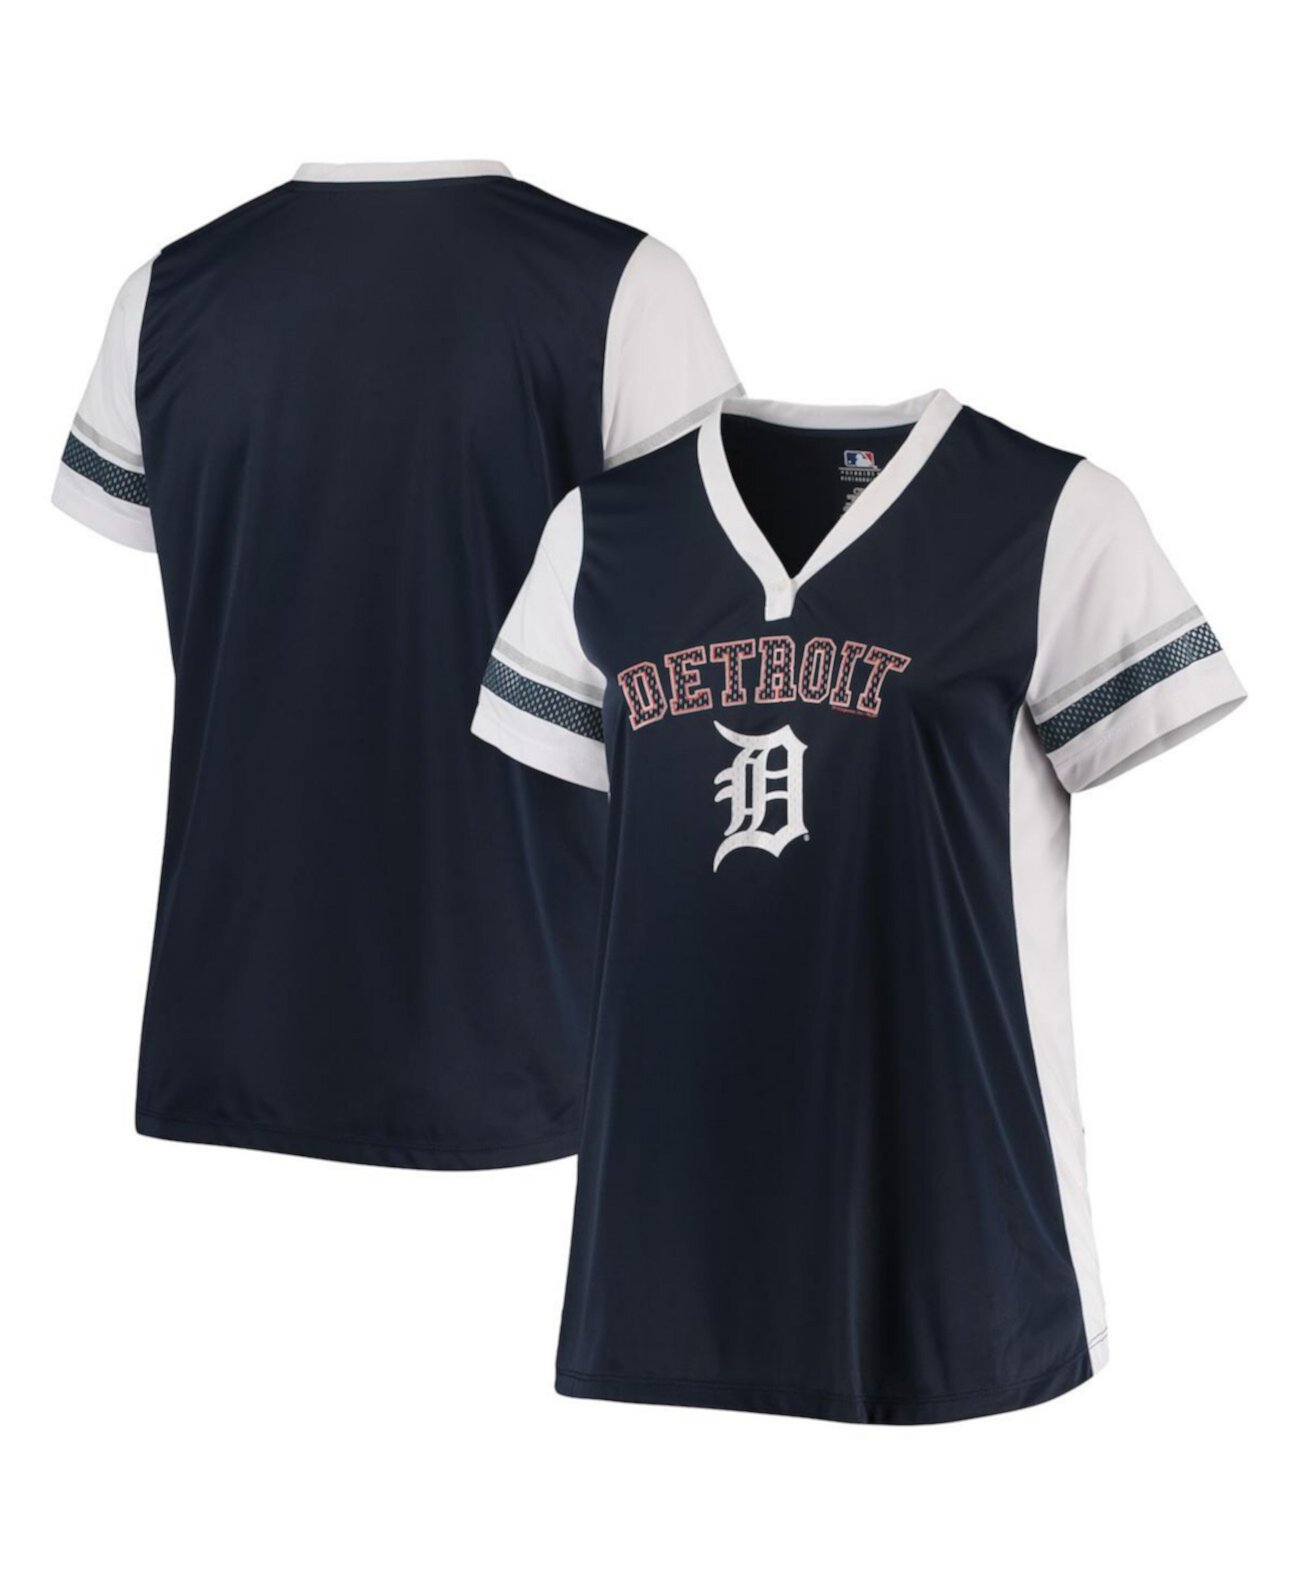 Женская футболка Detroit Tigers темно-синего и белого цвета из джерси большого размера с v-образным вырезом Profile